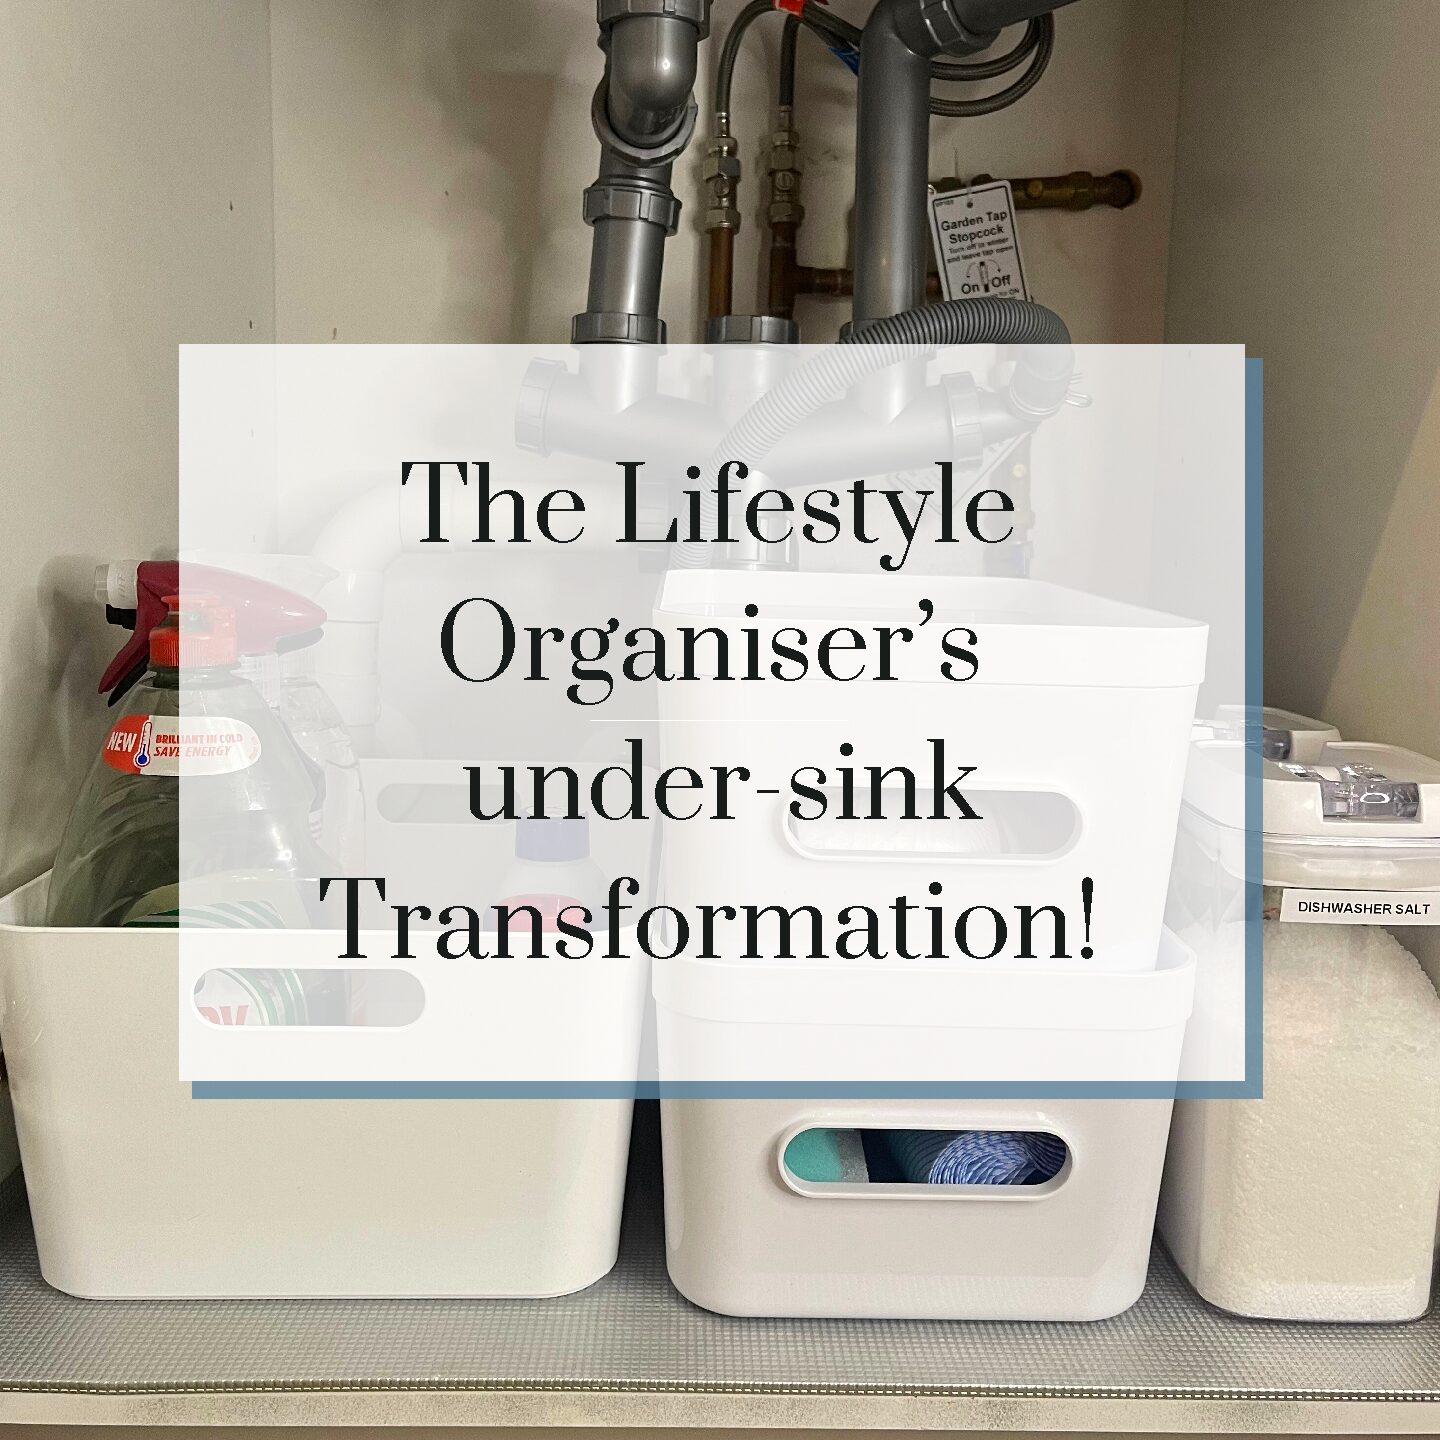 The Lifestyle Organiser’s under-sink kitchen cupboard transformation!